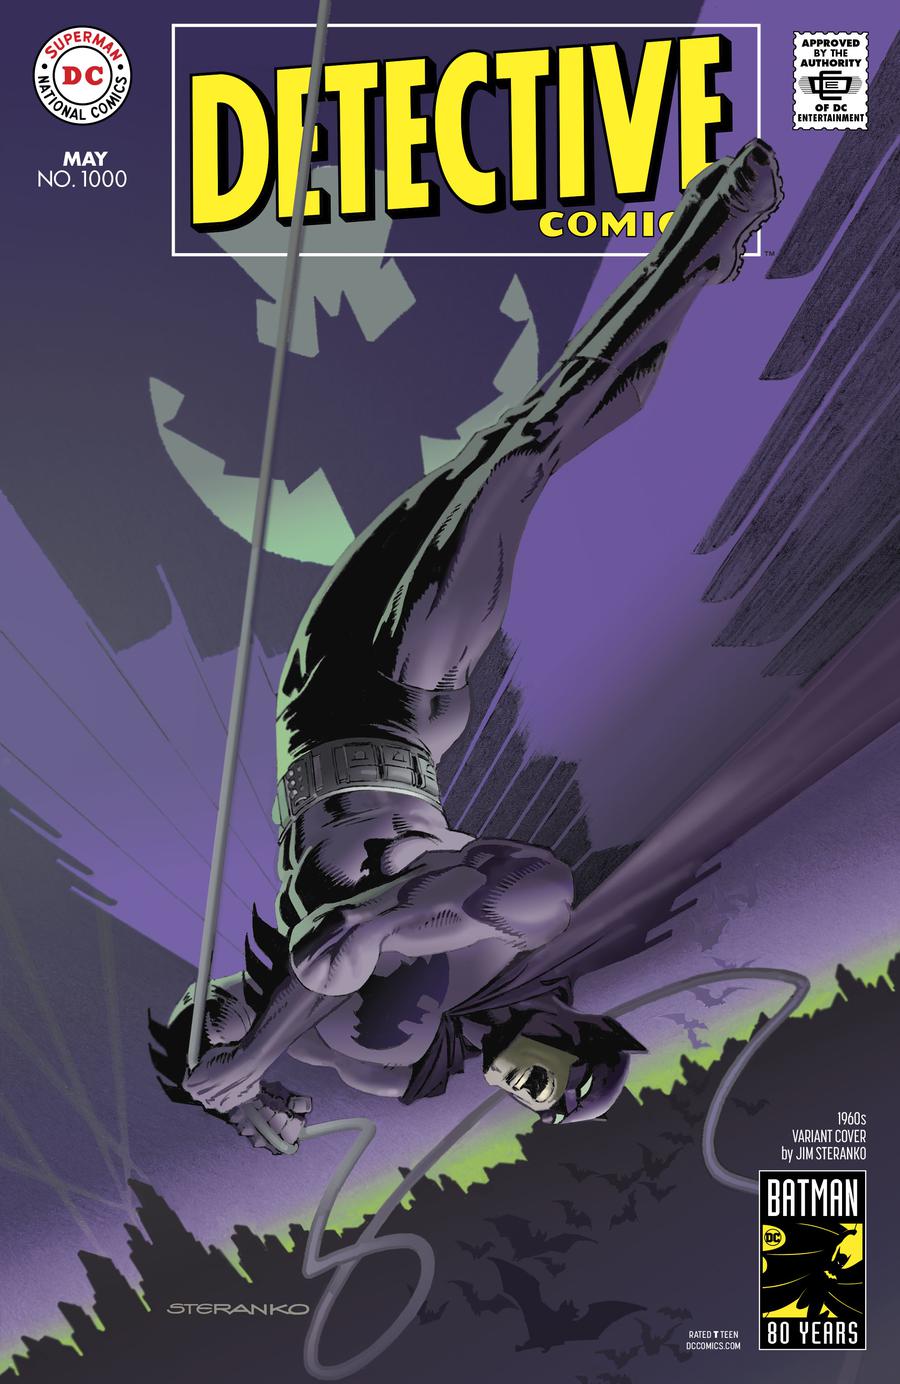 Detective Comics Vol 2 #1000 Cover E Variant Jim Steranko 1960s Cover